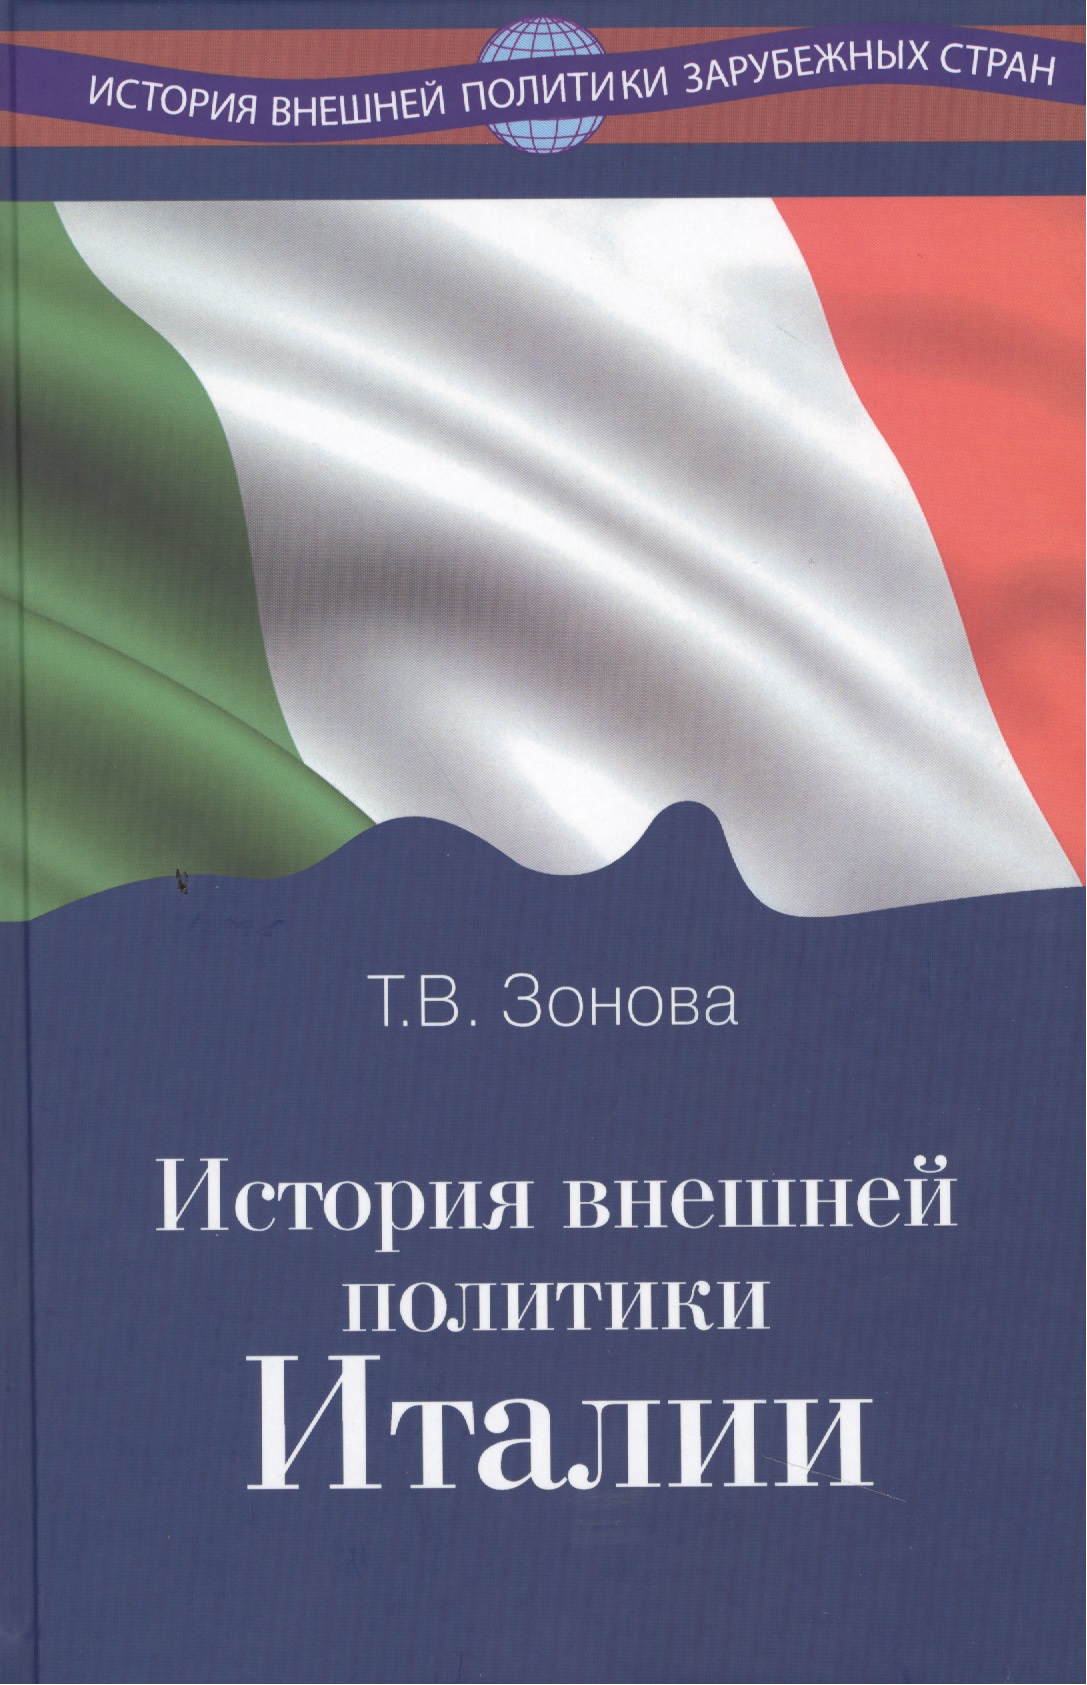  - История внешней политики Италии Учебник (ИстВнПолЗС) Зонова